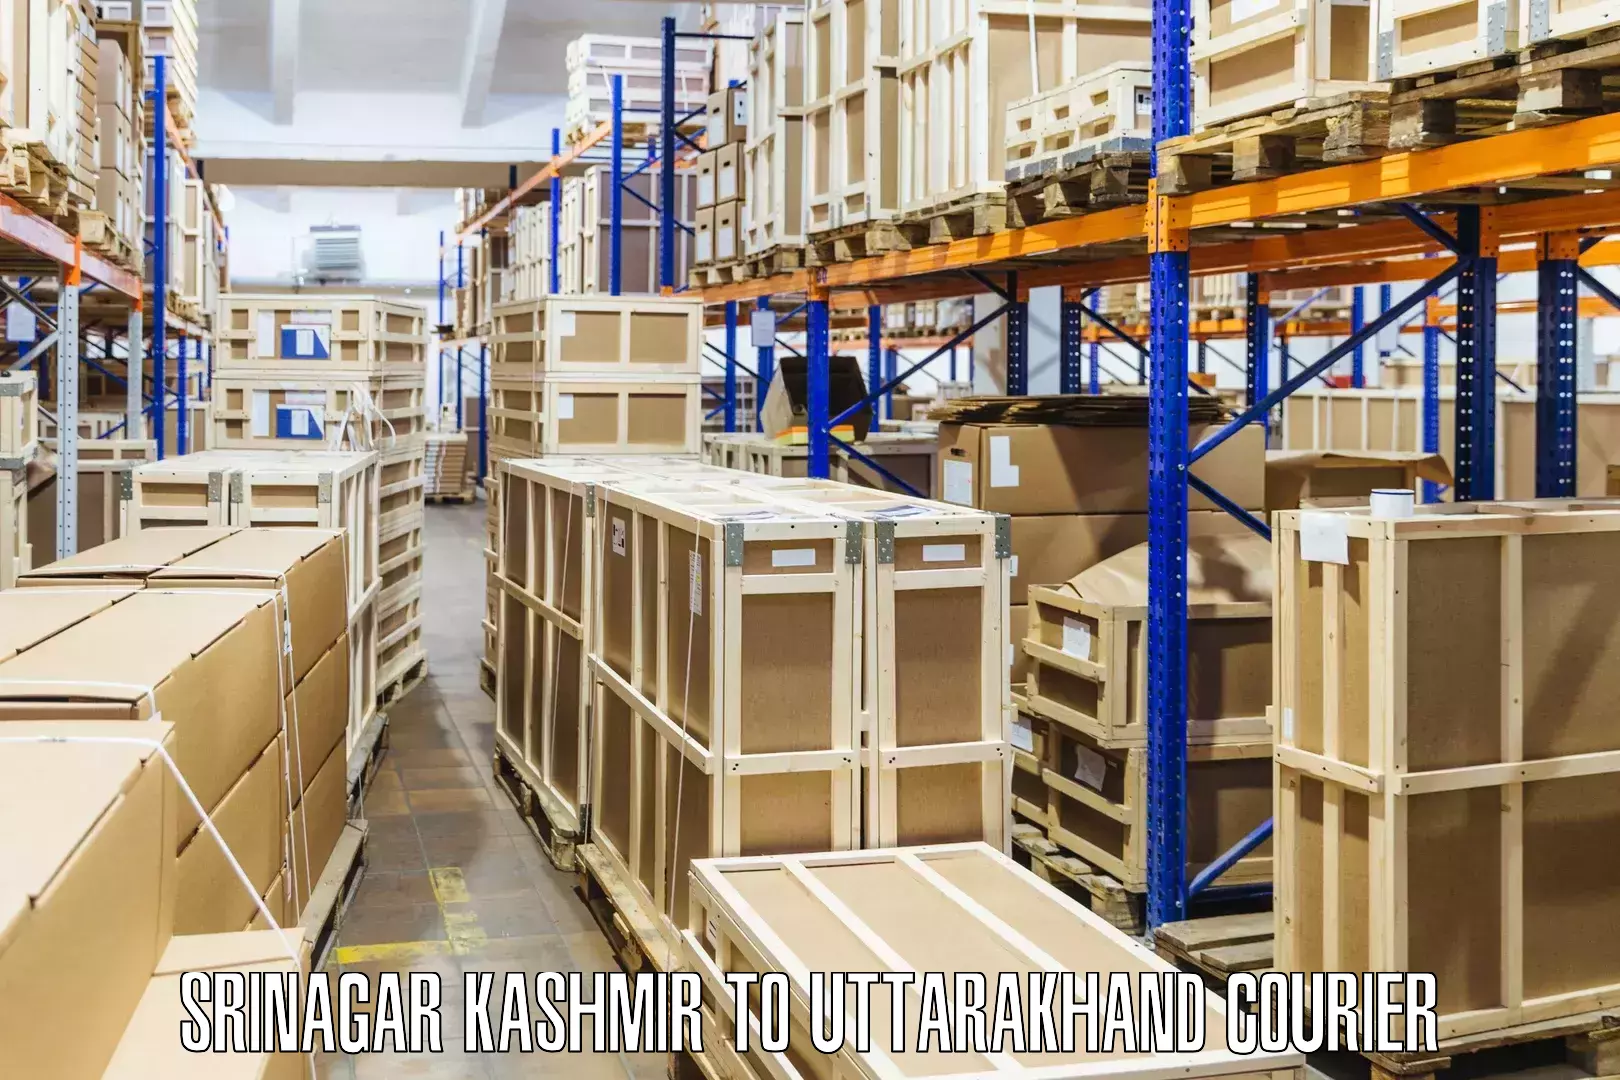 Cross-border shipping Srinagar Kashmir to Mussoorie